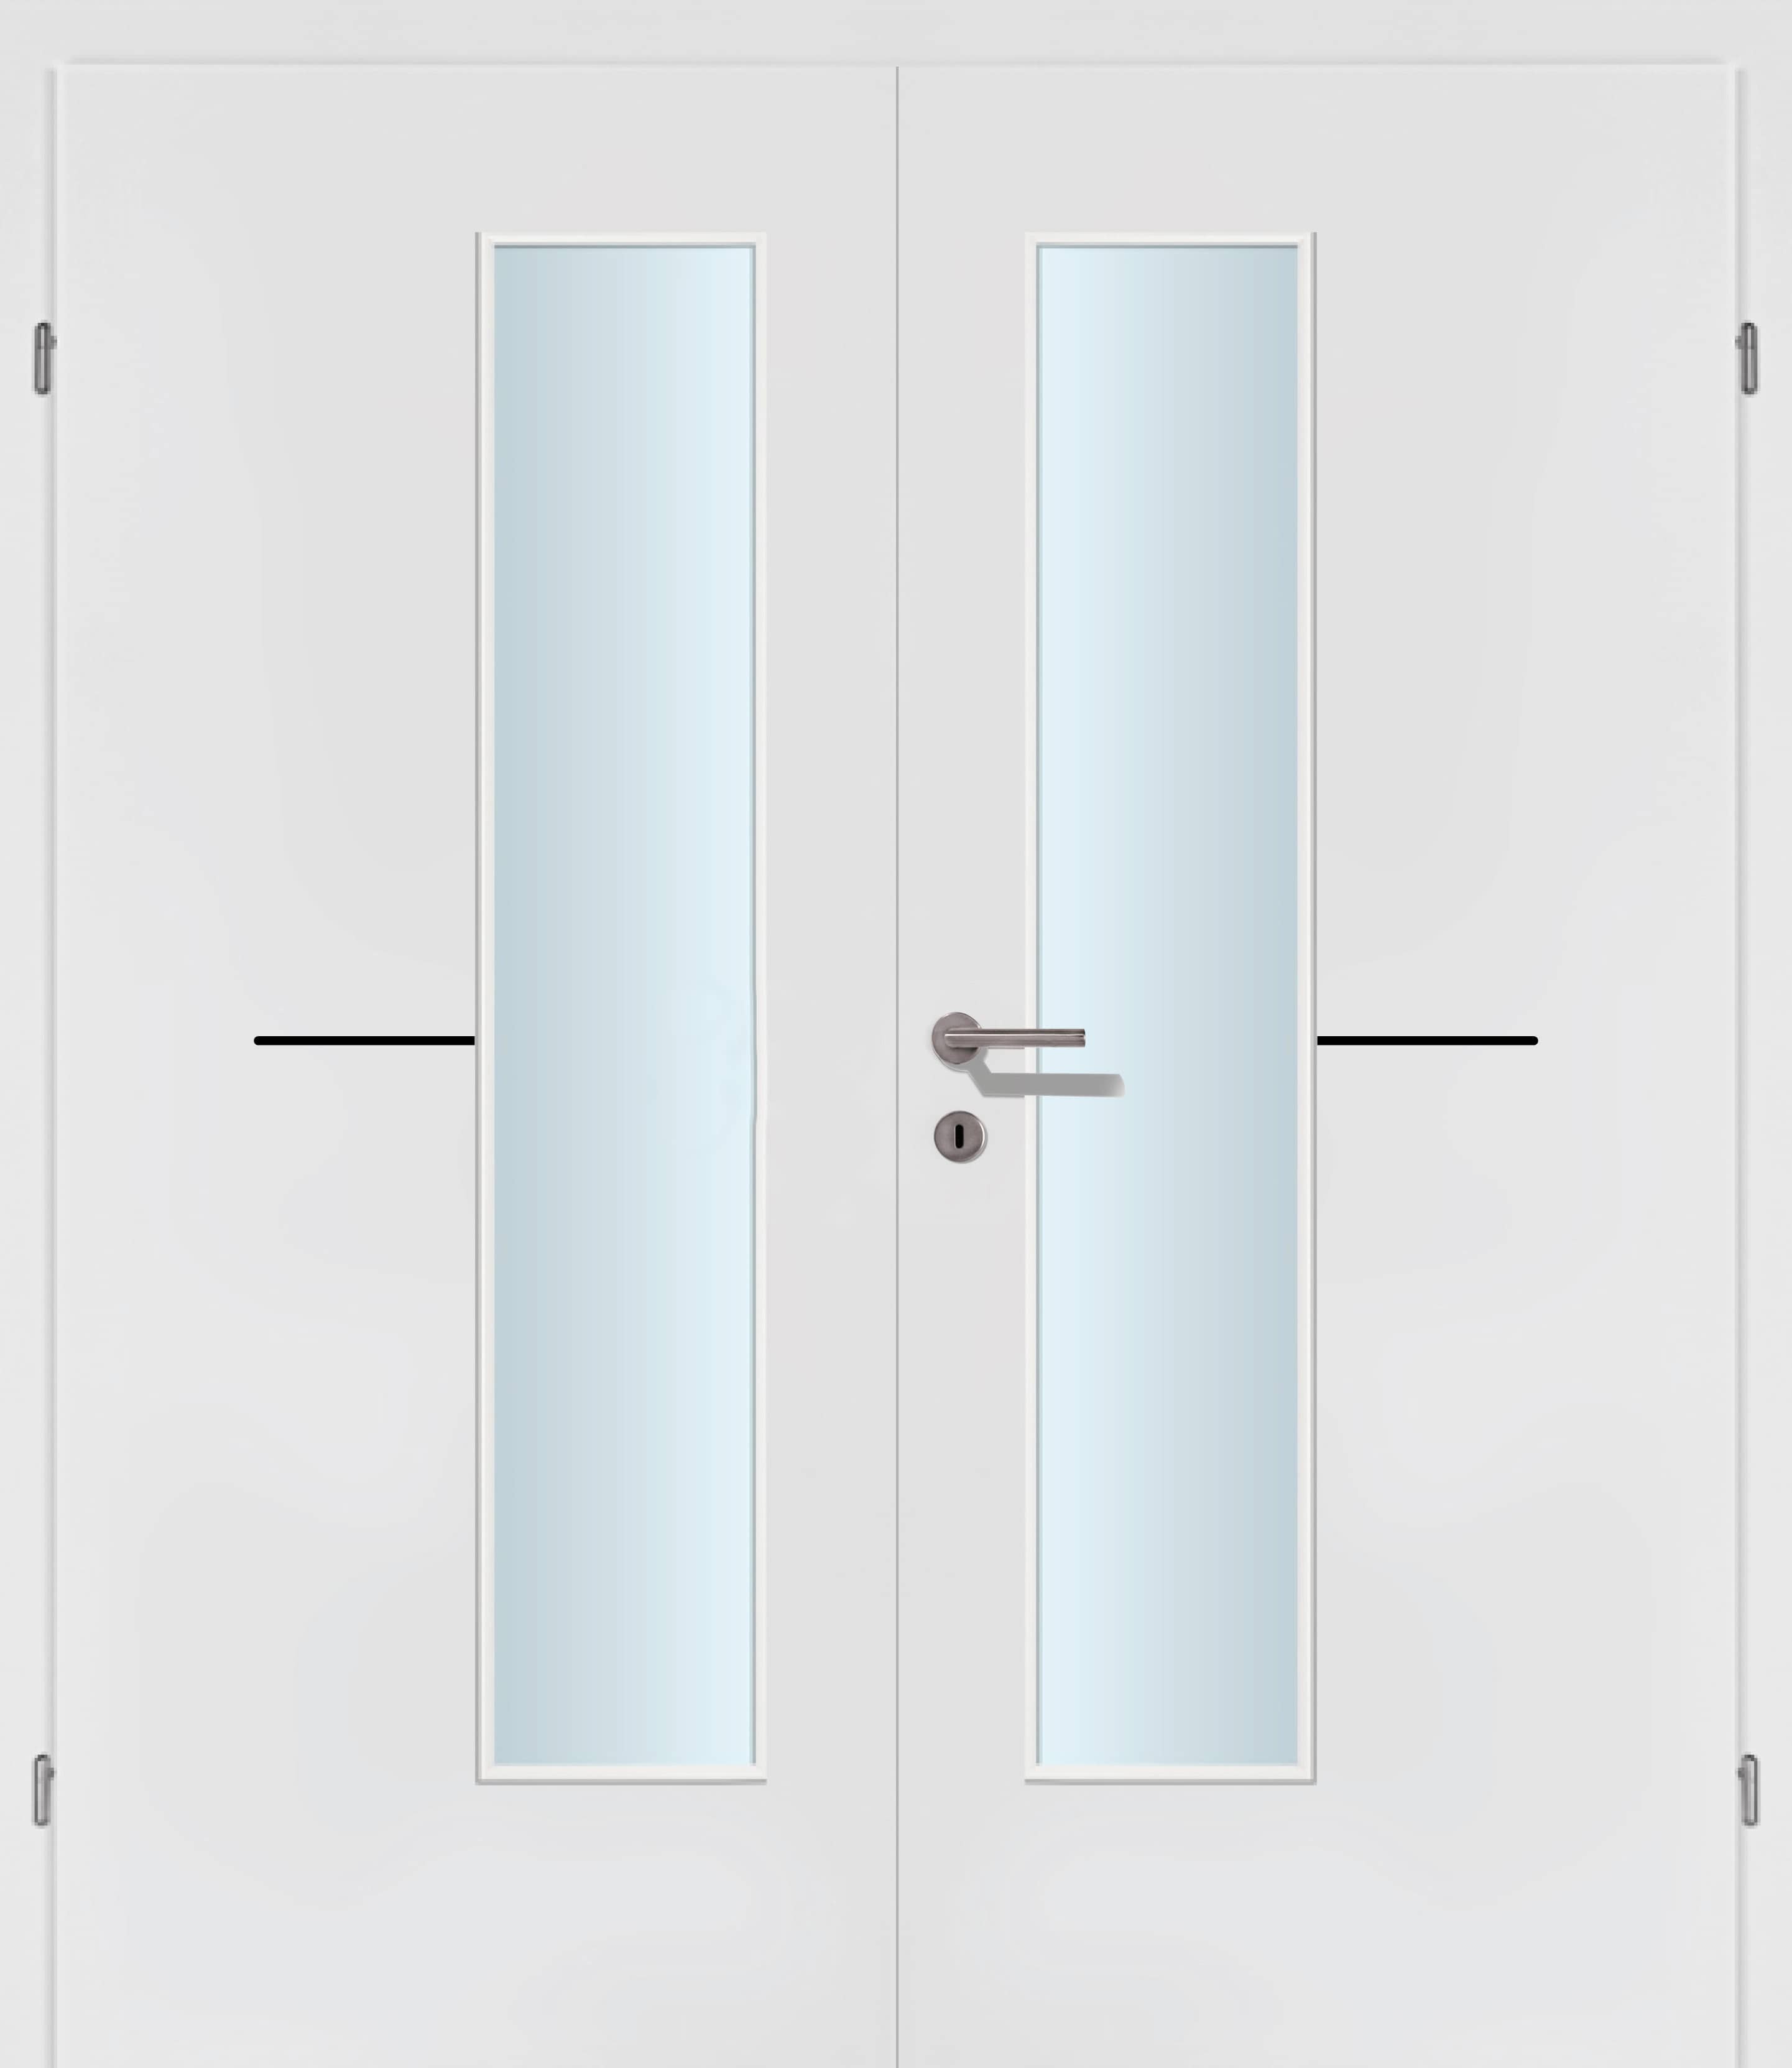 Selektion T47 Black Lisenen weiss Innentür Inkl. Zarge (Türrahmen) Doppeltüre Inkl. Glaslichte EN Drückerseitig